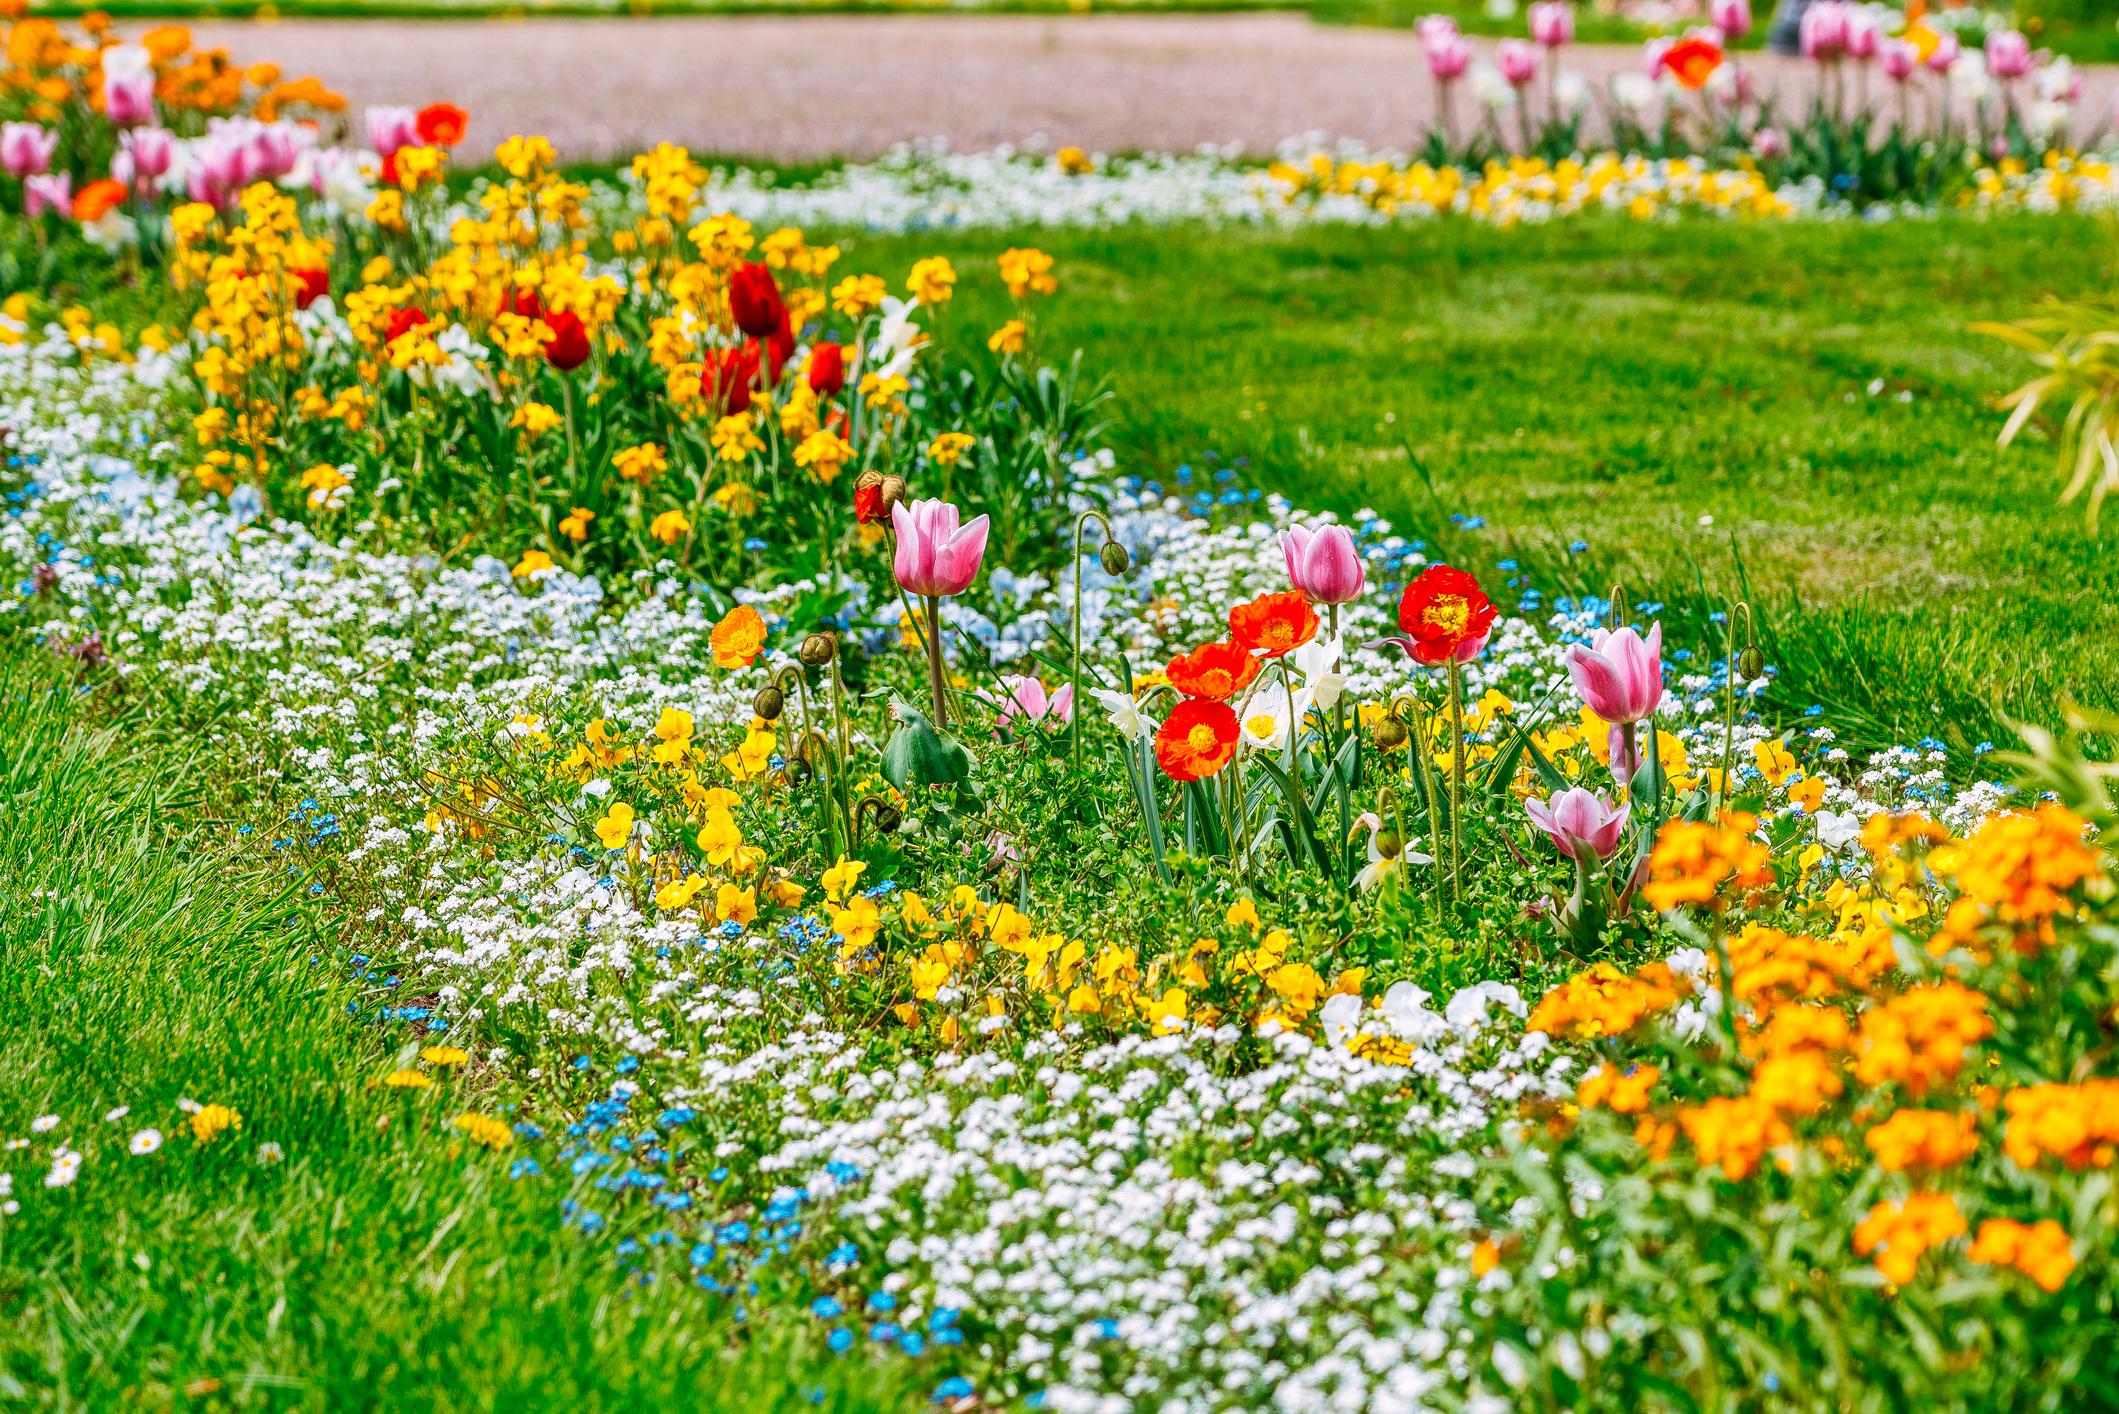 Pour un festival fleuri le plus long possible qui se prolonge jusqu’en juin, il est conseillé d’échelonner les périodes de floraison des plantes à floraison printanière.